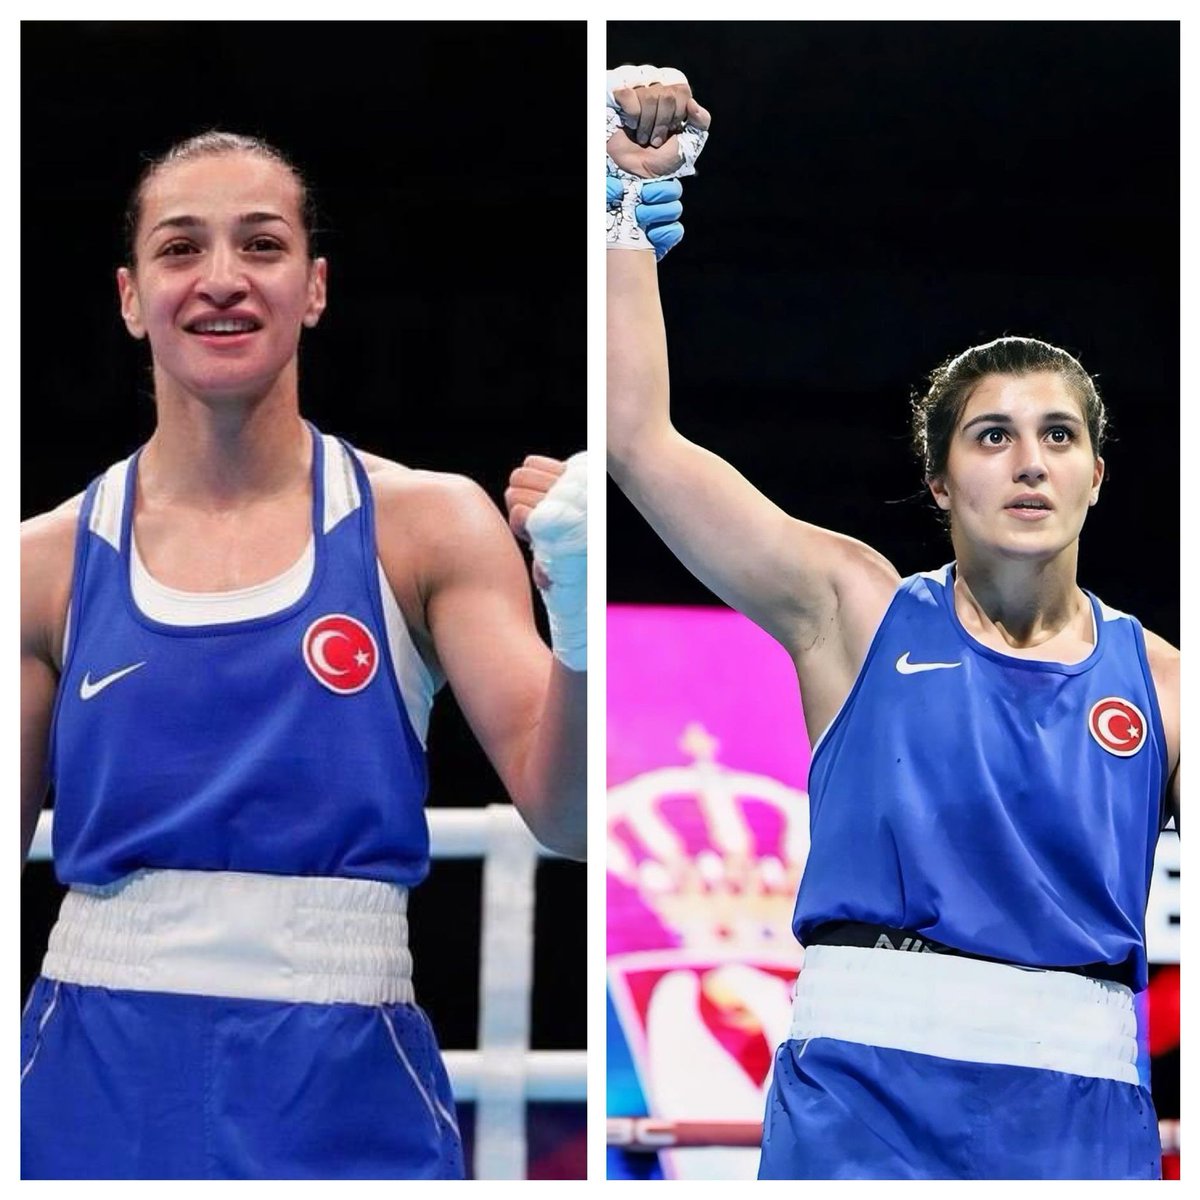 Sırbistan'da düzenlenen Avrupa Boks Şampiyonası'nda Avrupa Şampiyonu olarak bizleri gururlandıran milli sporcularımız Buse Naz Çakıroğlu ve Busenaz Sürmeneli evlatlarımızı tebrik ediyorum.

Başarılarınız daim olsun. 🇹🇷🥇👏🏻